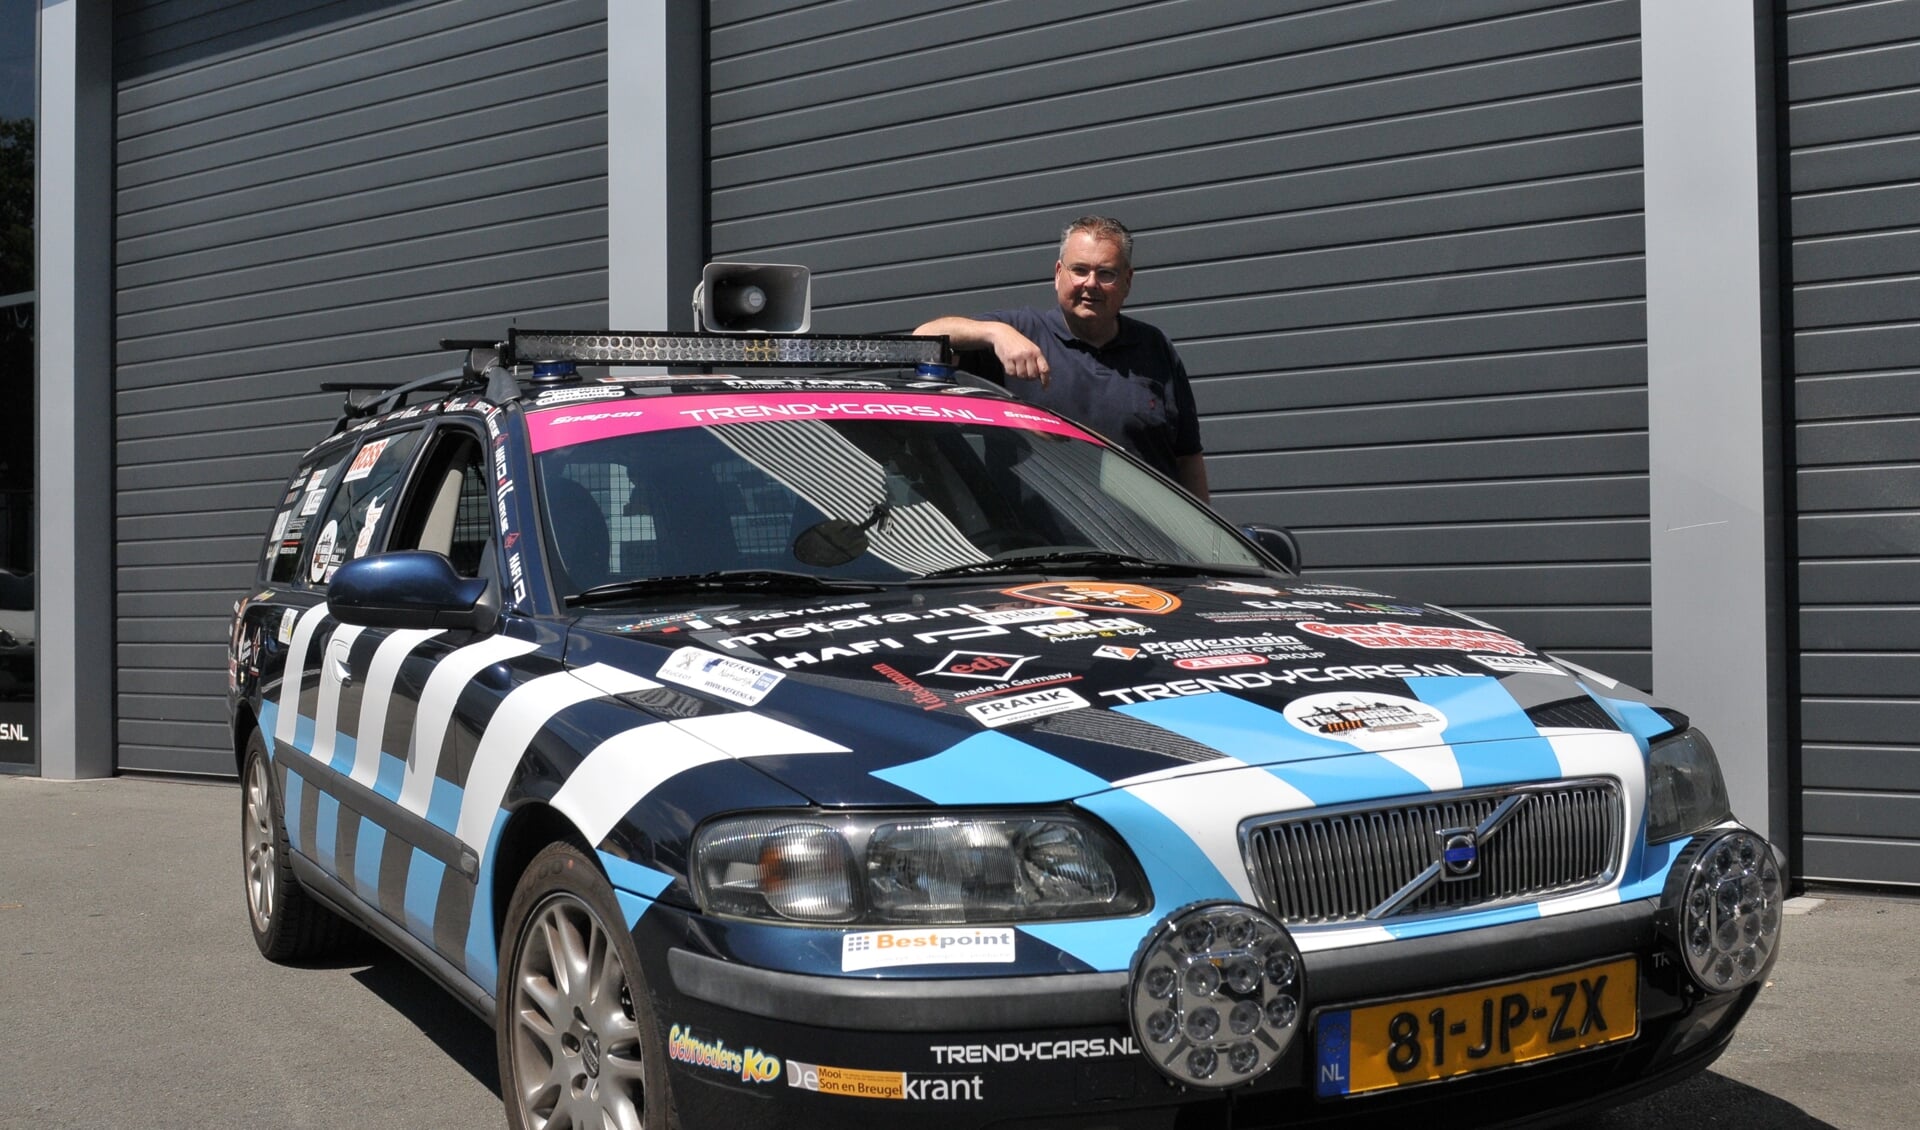 Erik Mol bij zijn Volvo, op de foto ontbreekt David van Grinsven